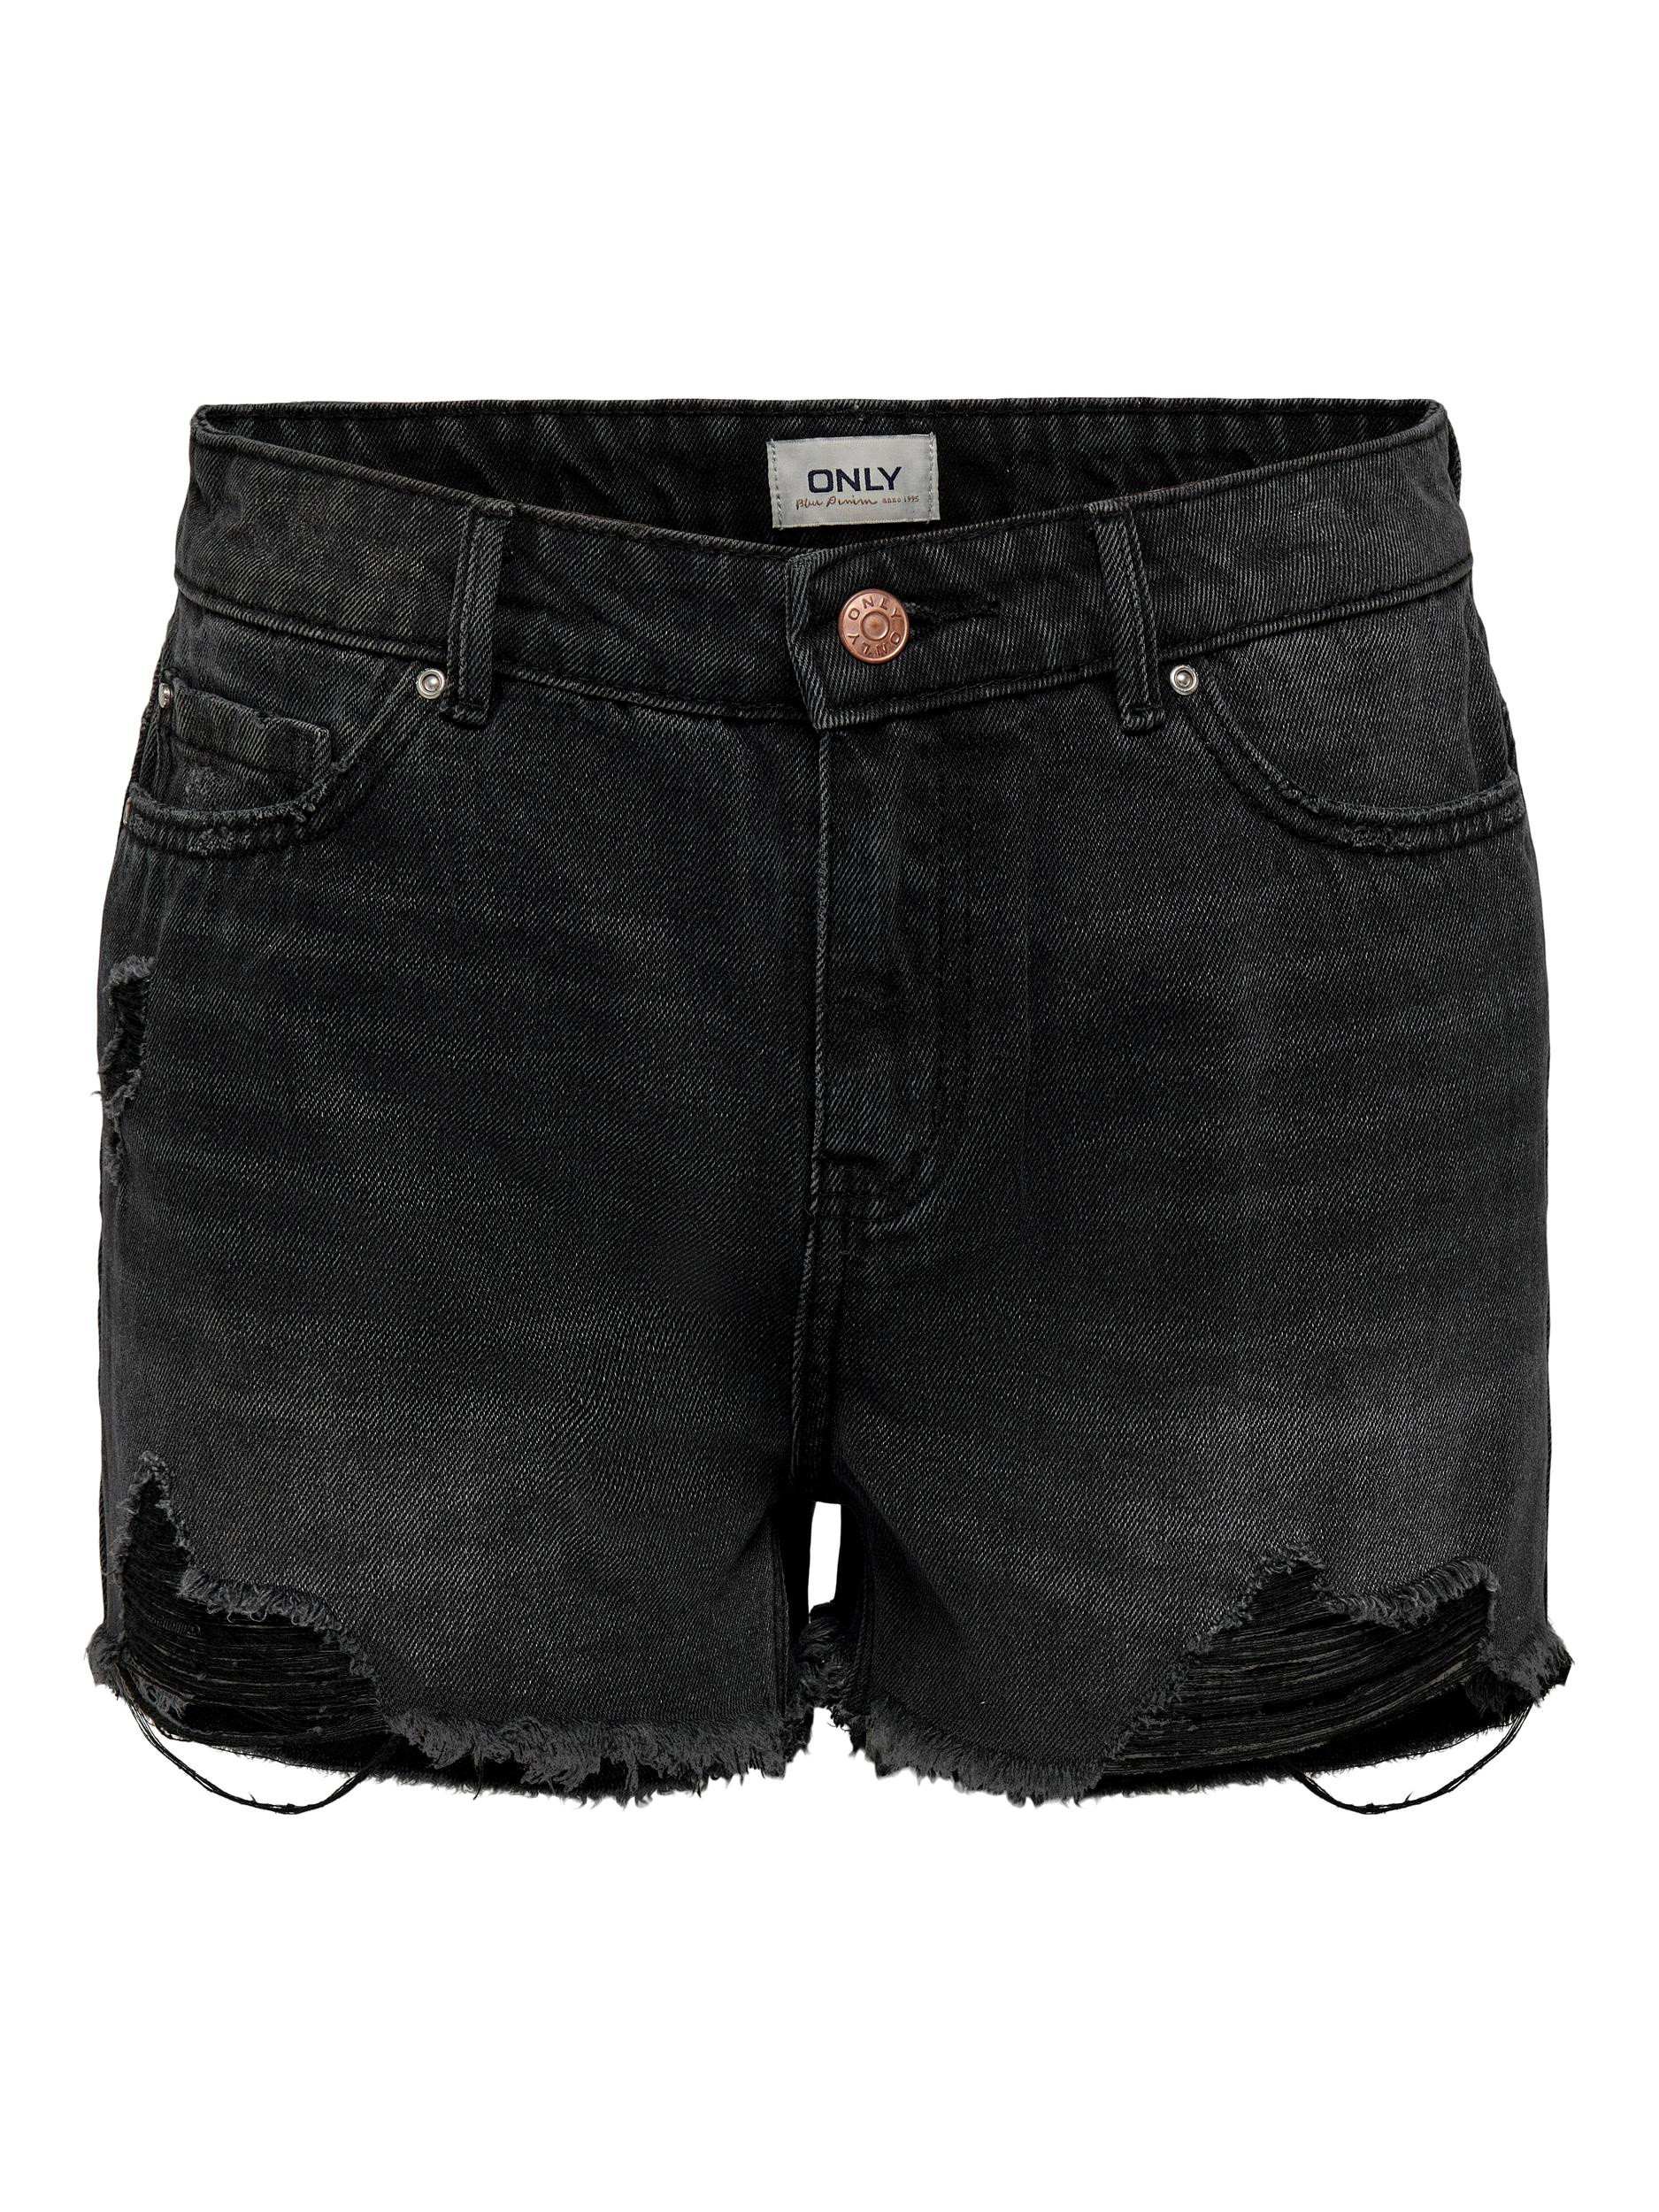 Only - Regular fit five-pocket shorts, Black, large image number 0